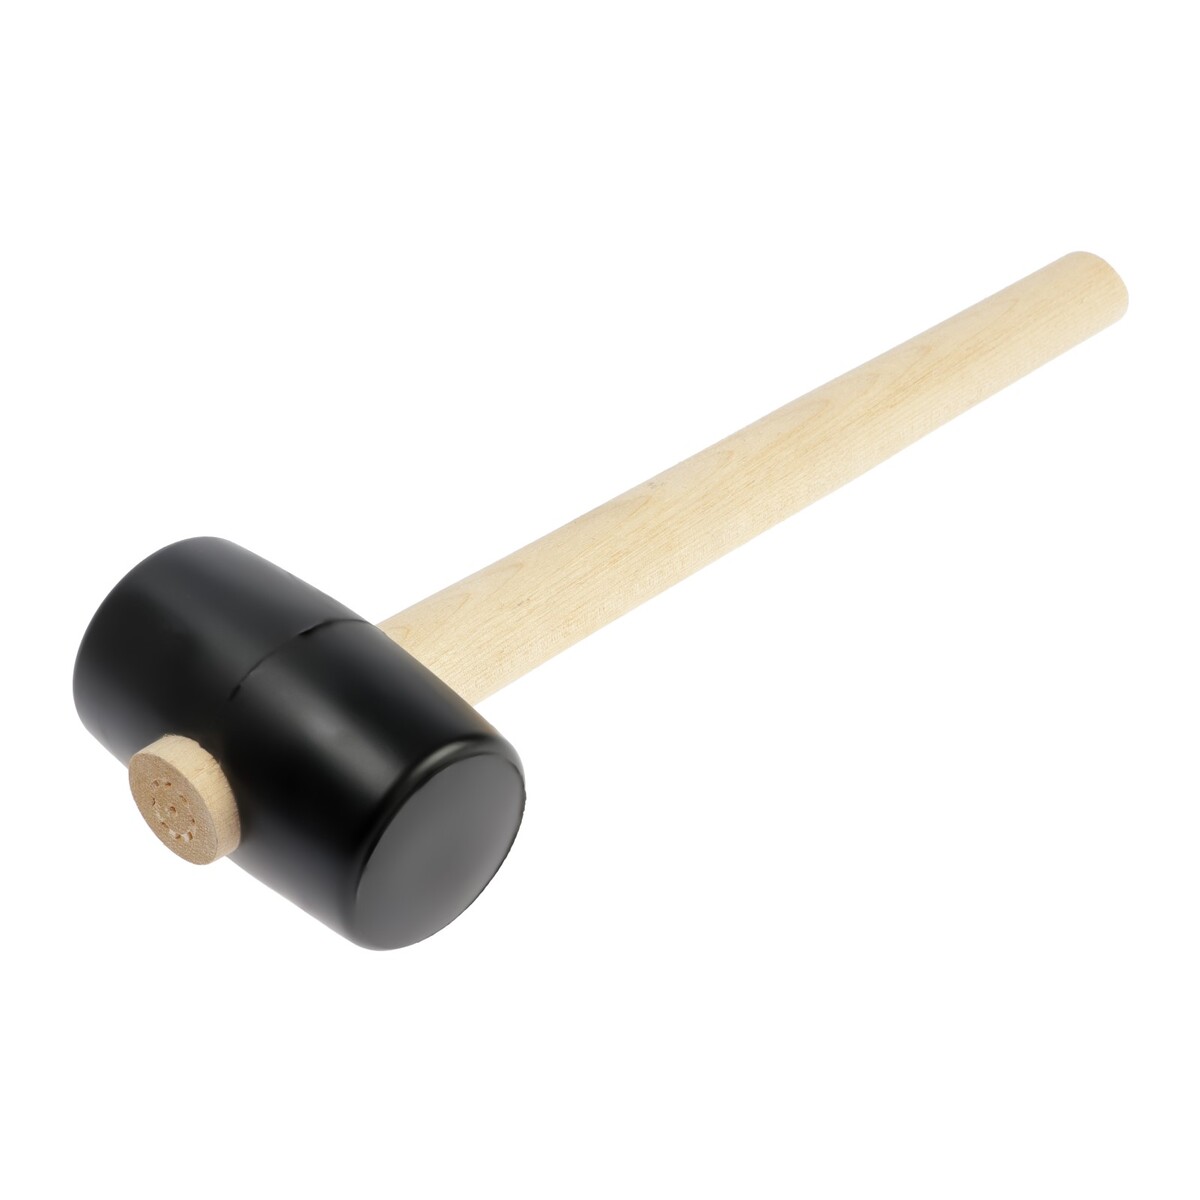 Киянка лом, деревянная рукоятка, черная резина, 55 мм, 300 г киянка тундра деревянная рукоятка черная резина 900 г